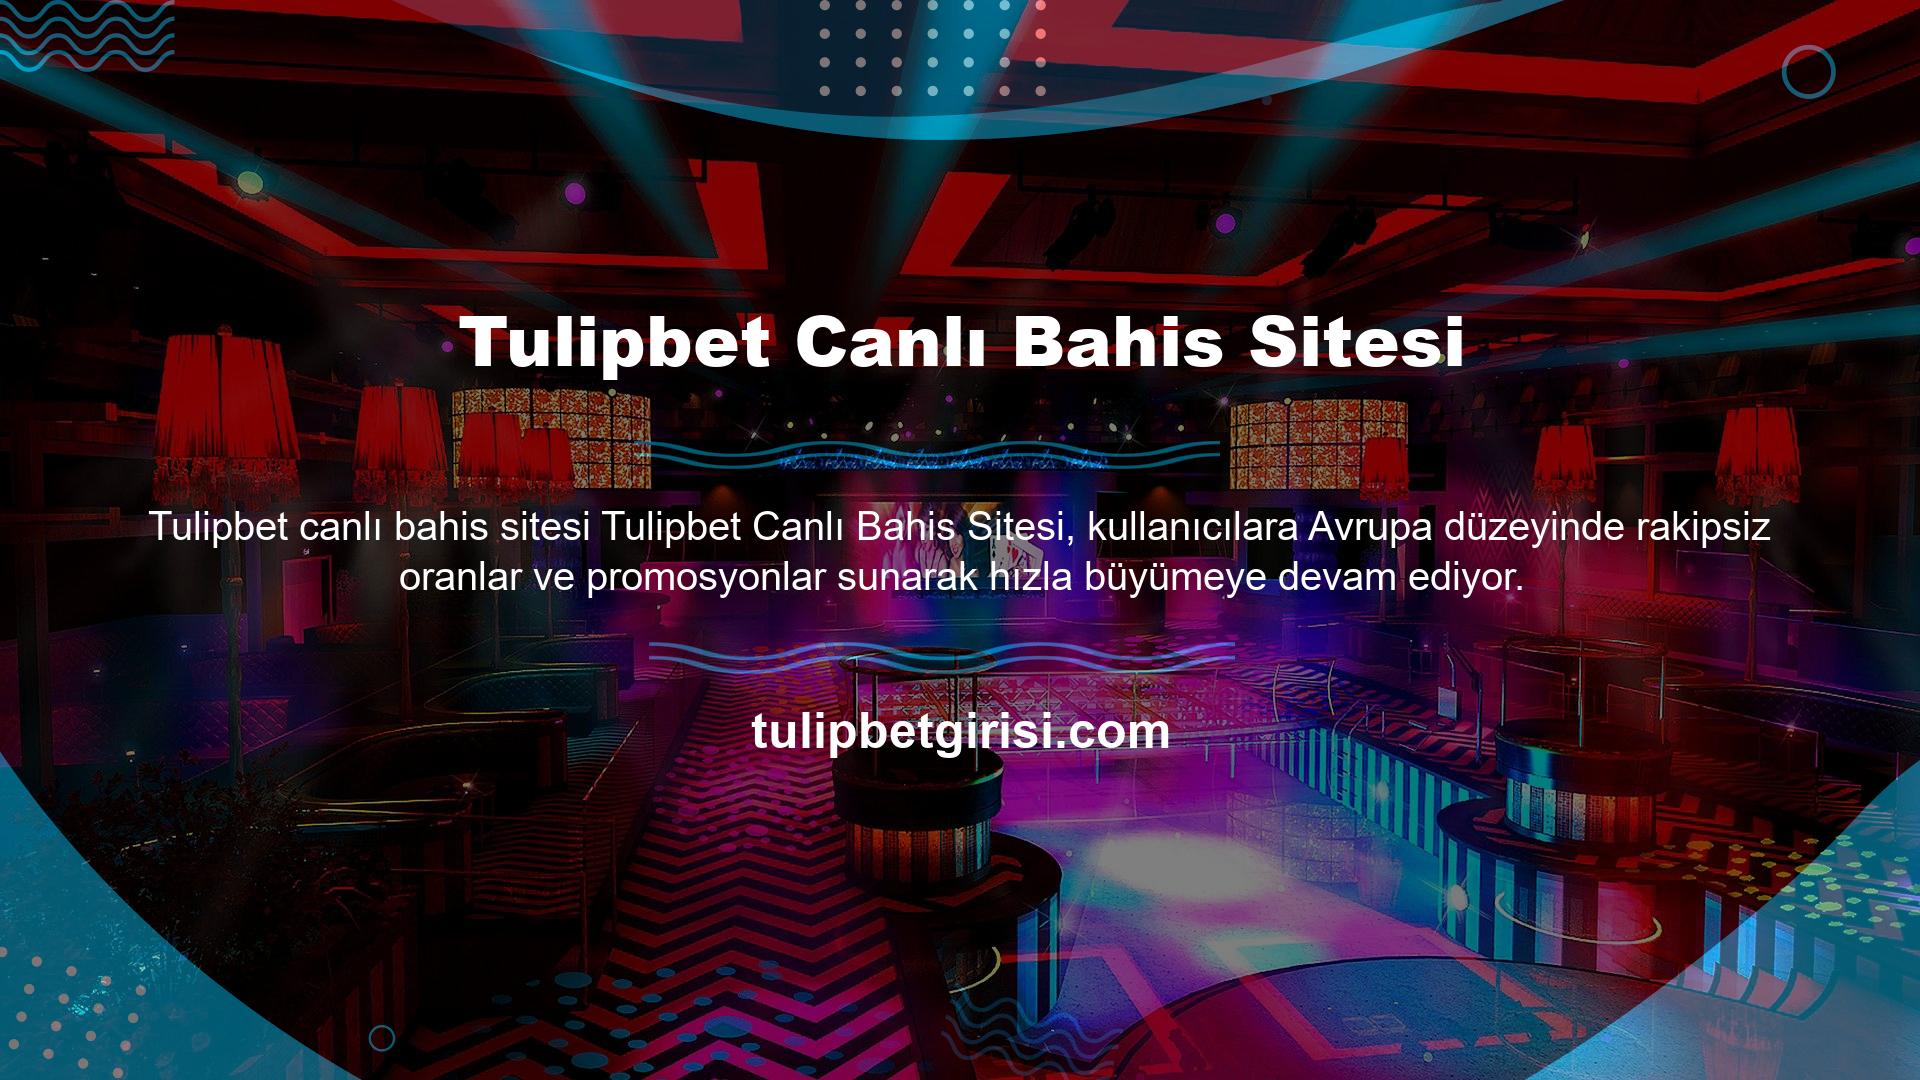 Spor ve casino oyunları söz konusu olduğunda Tulipbet canlı bahis sitesi bu bölümde kullanıcılarına bonuslar ve promosyonlar da sunmaktadır